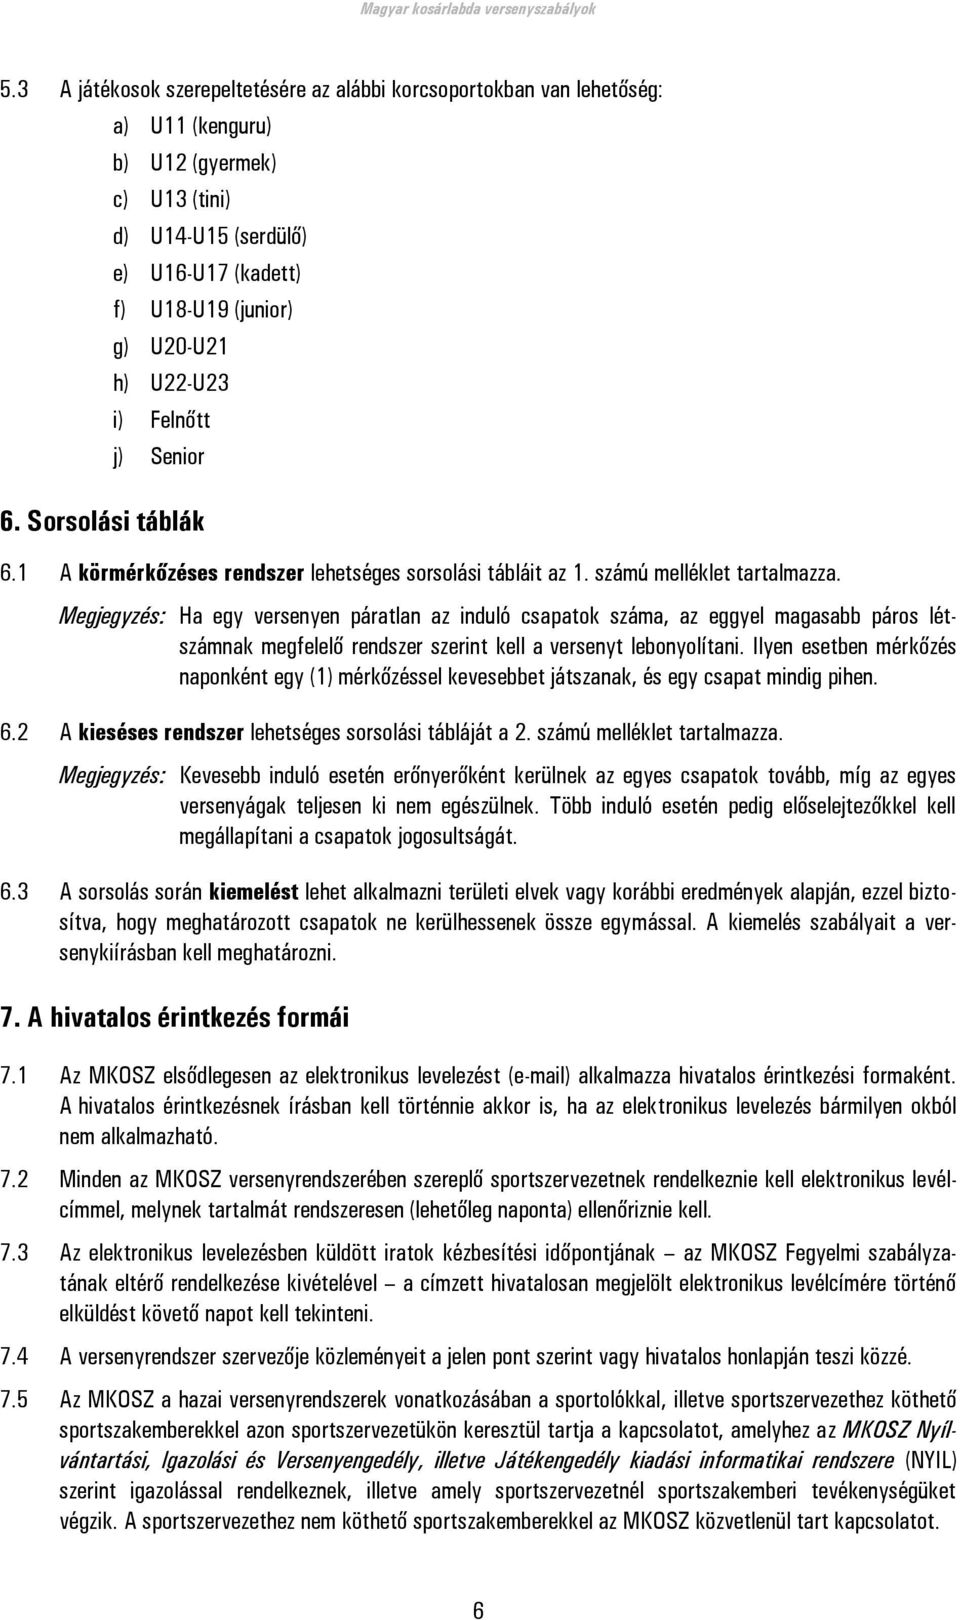 Magyar kosárlabda versenyszabályok - PDF Ingyenes letöltés